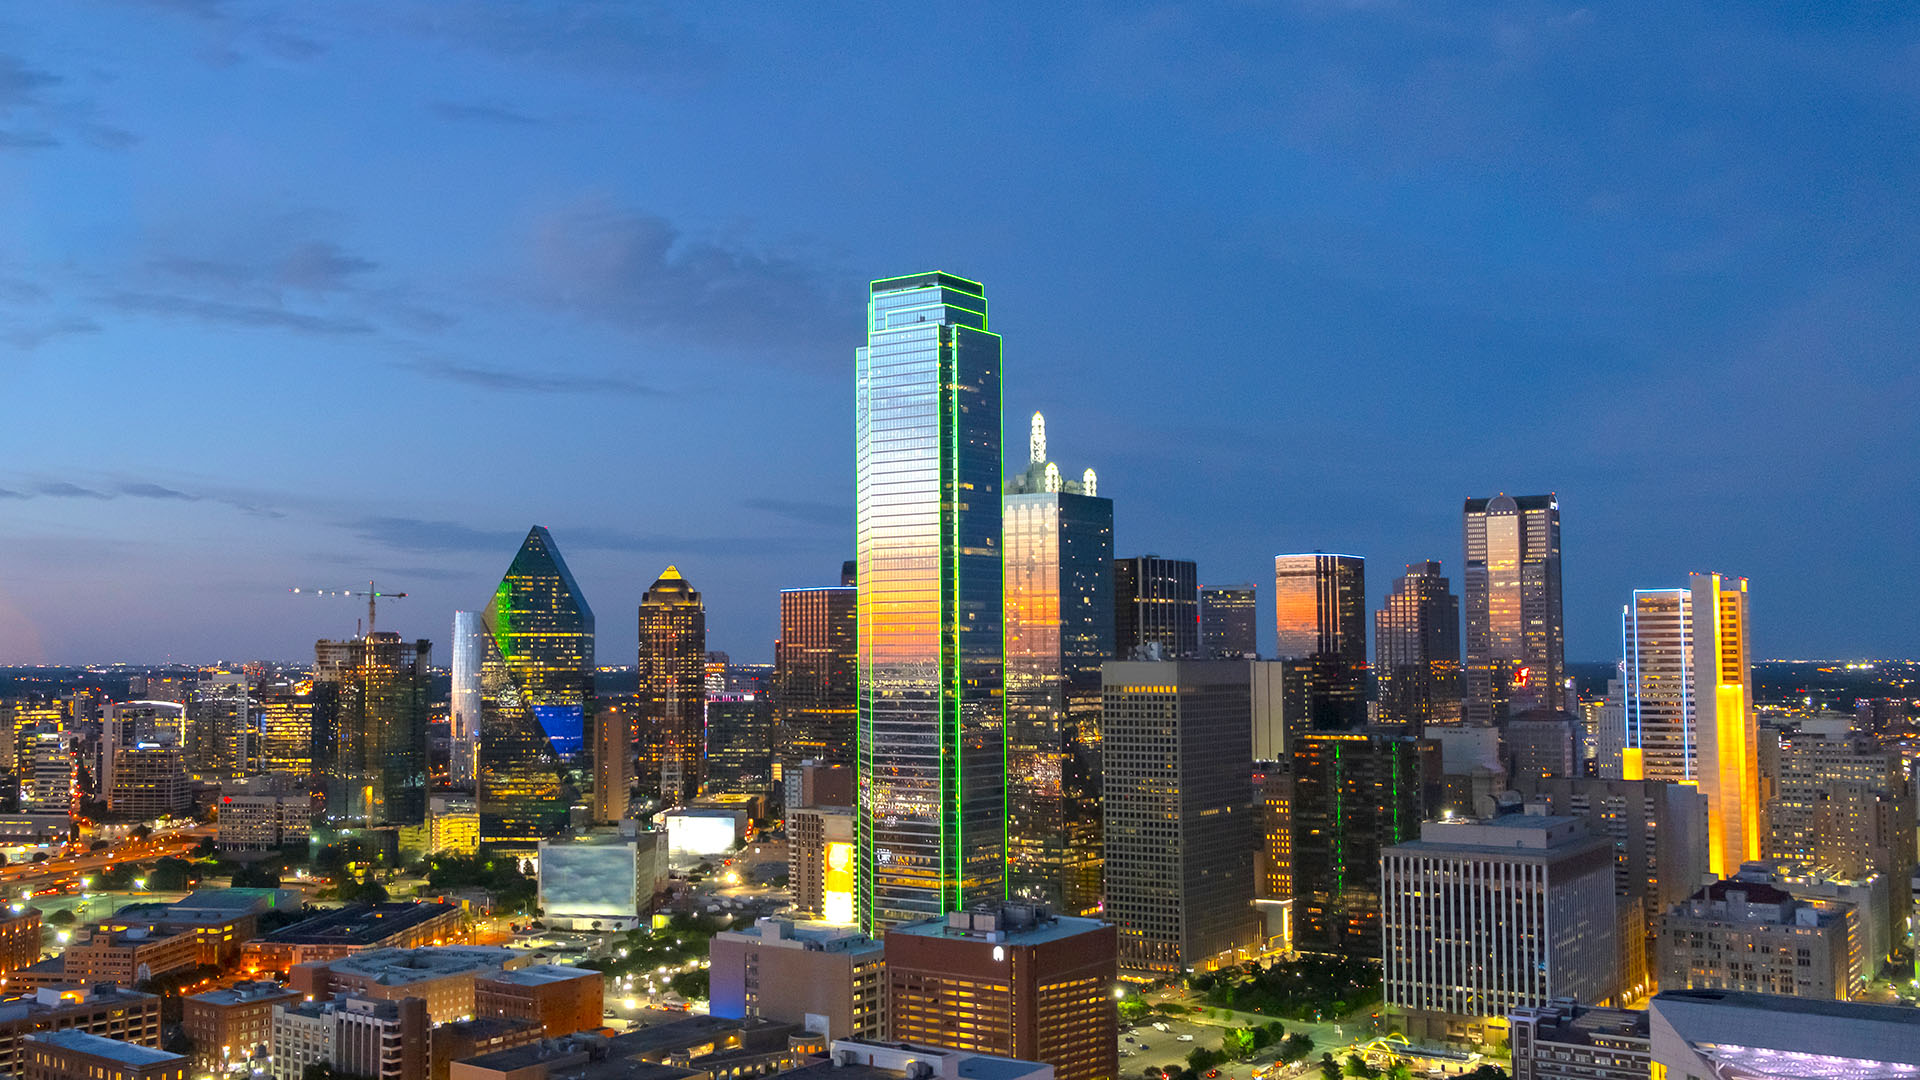 Dallas skyscrapers in night sky